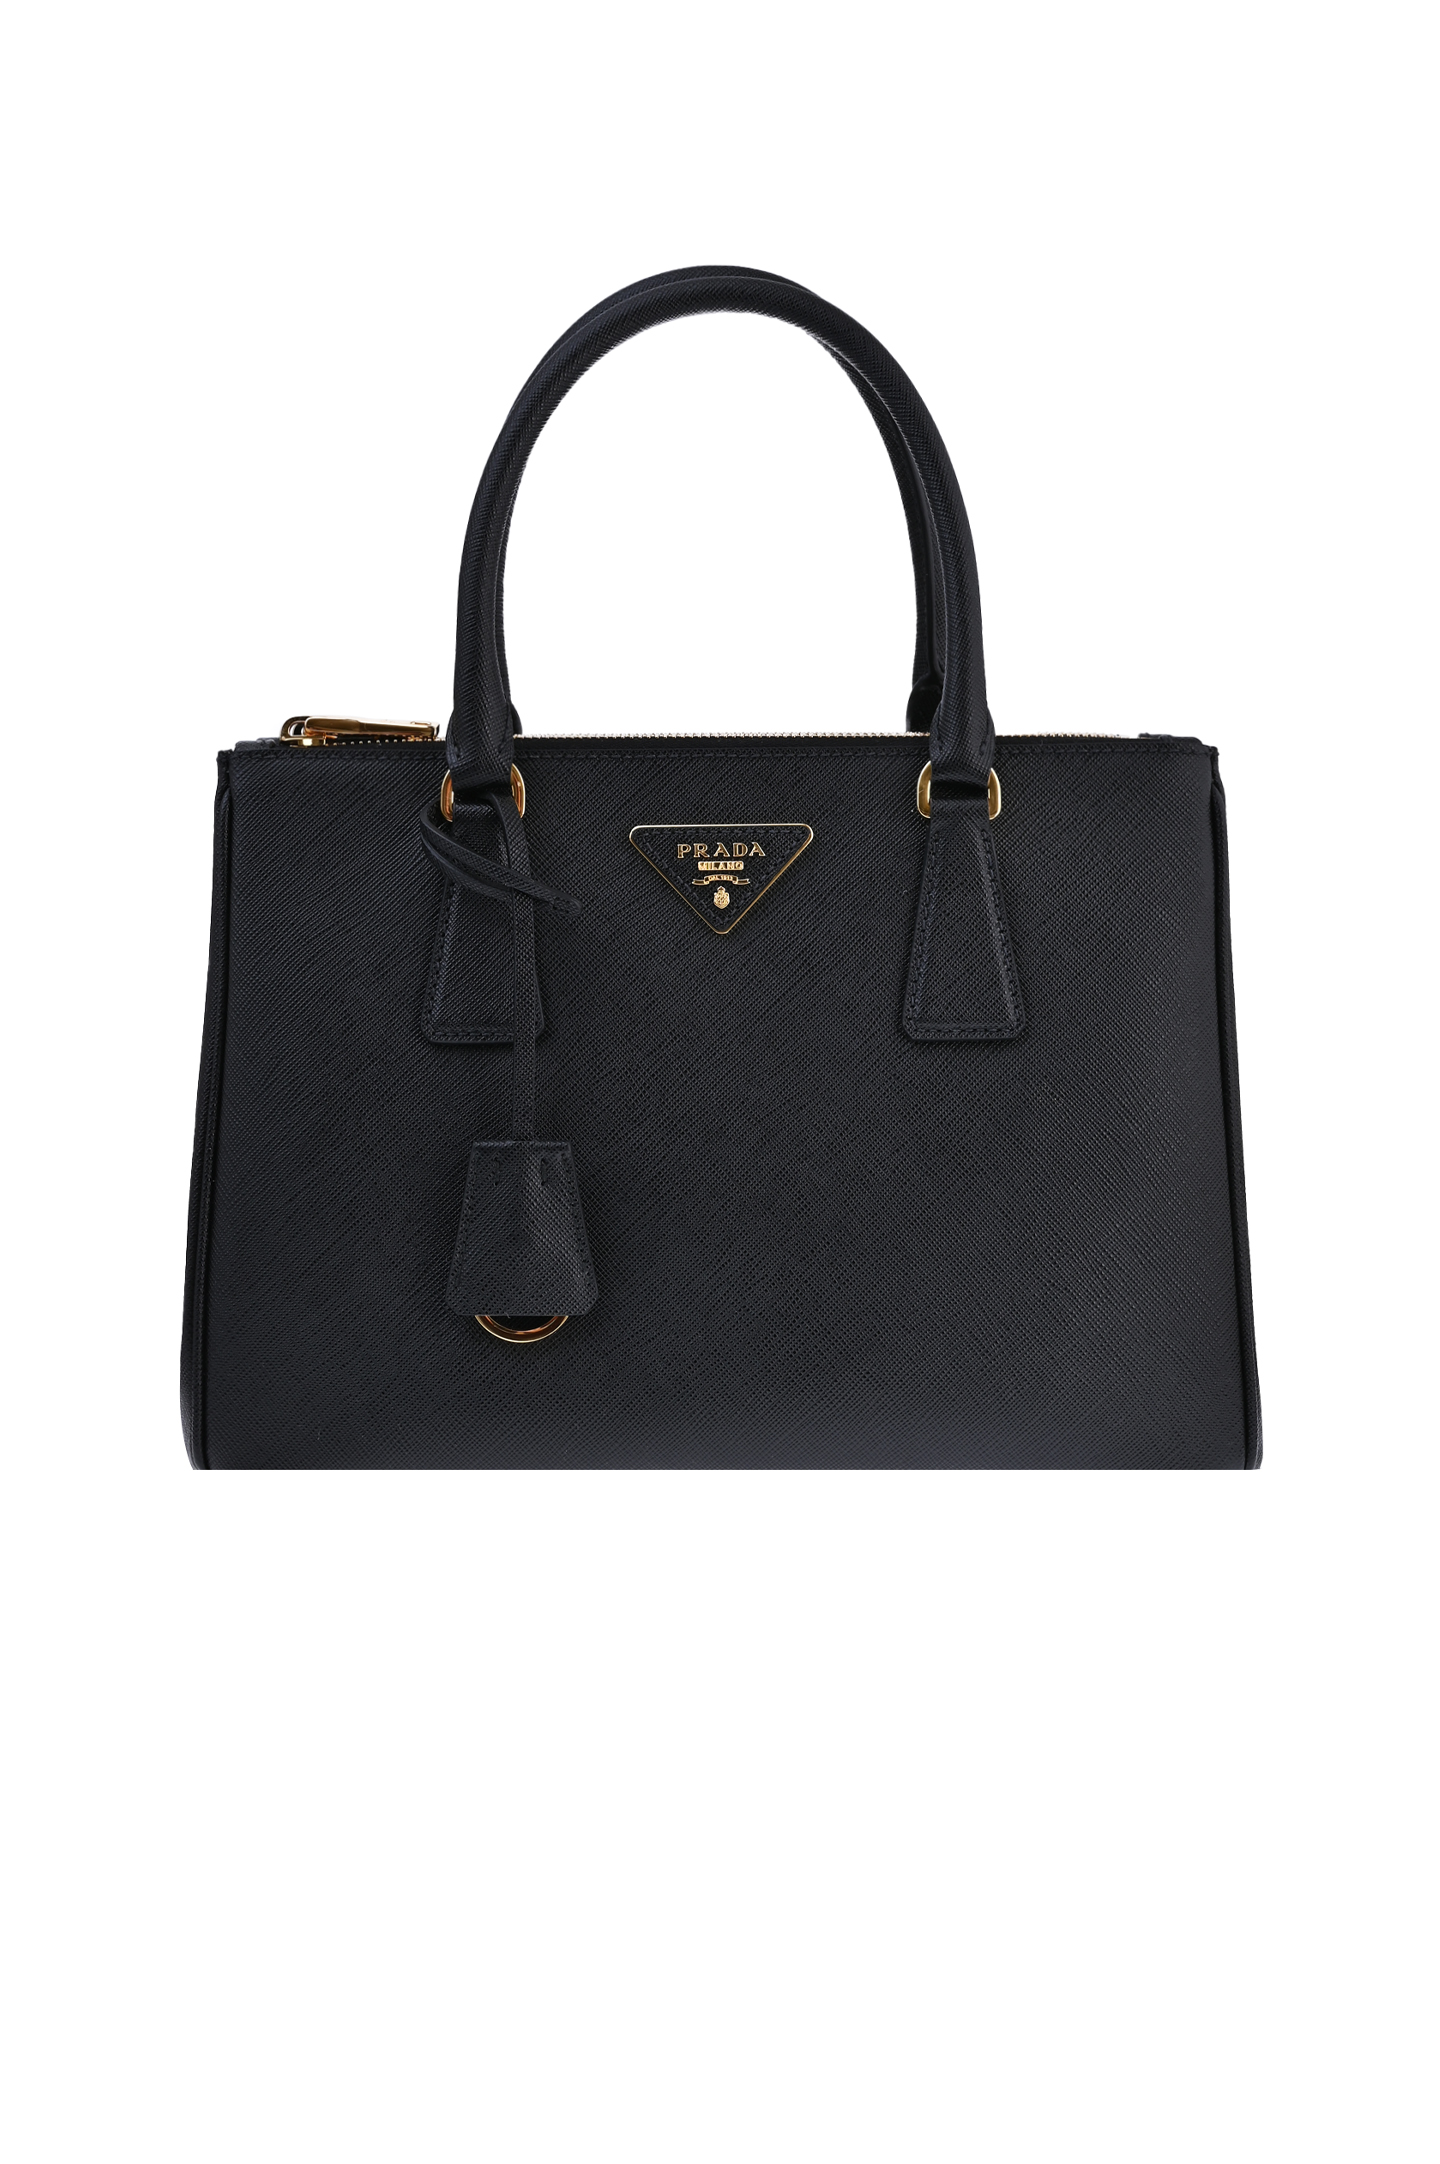 Женские сумки Prada - купить в Москве в интернет-магазинах на Shopsy